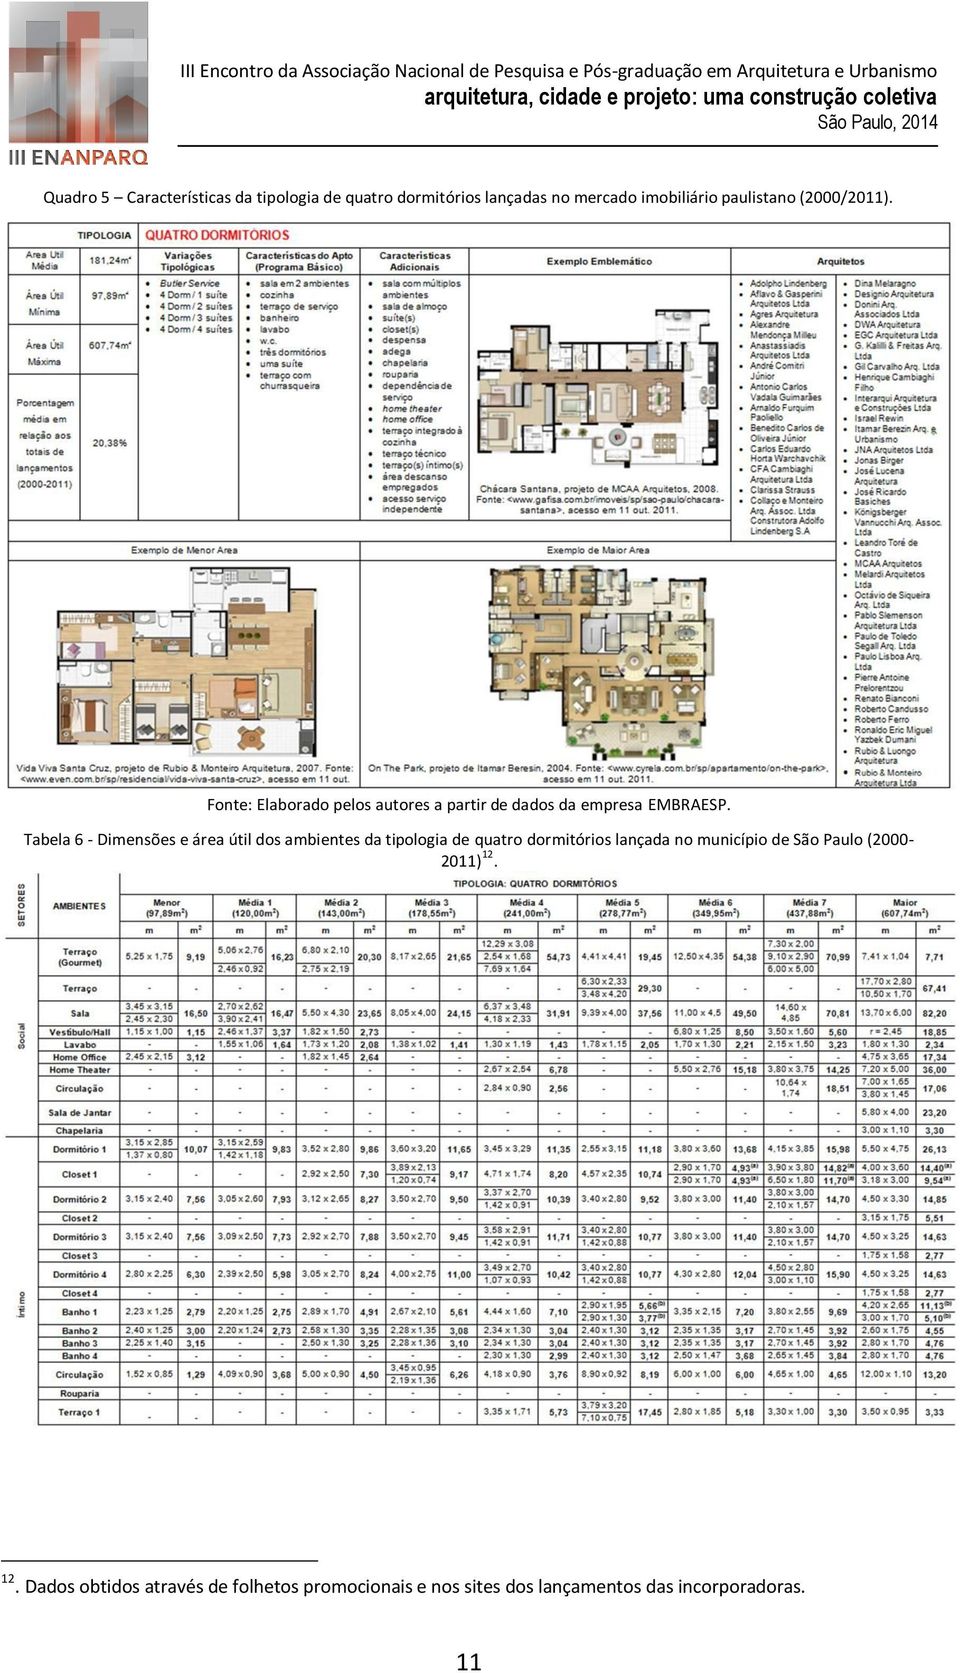 Tabela 6 - Dimensões e área útil dos ambientes da tipologia de quatro dormitórios